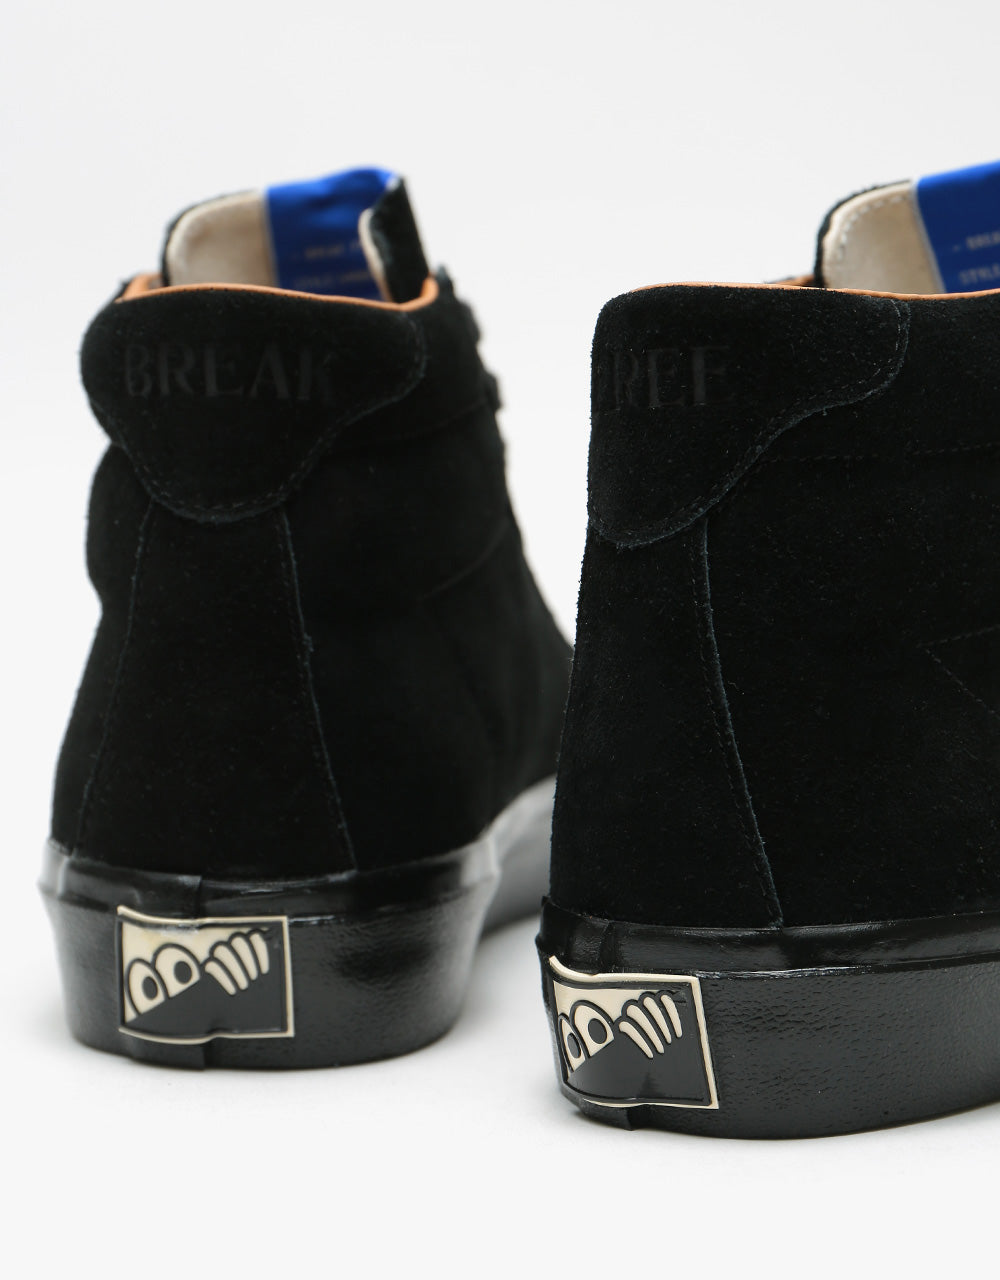 Last Resort AB VM001 Suede Hi Skate Shoes - Black/Black